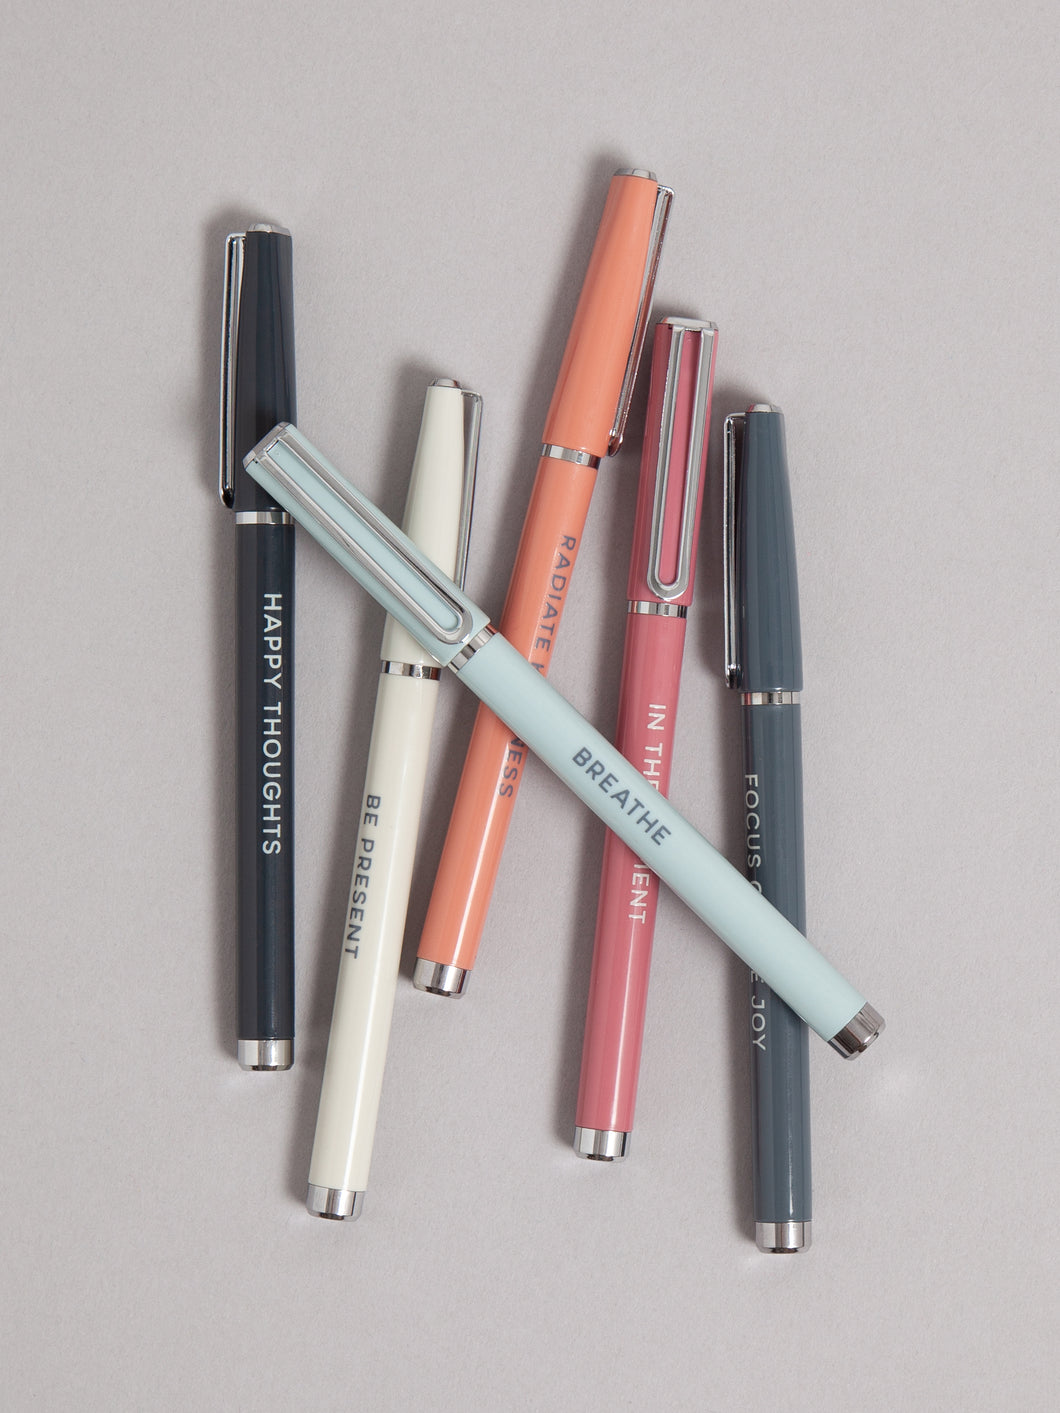 U Brands Catalina Colored Ink Felt Tip Pens, Set of 6